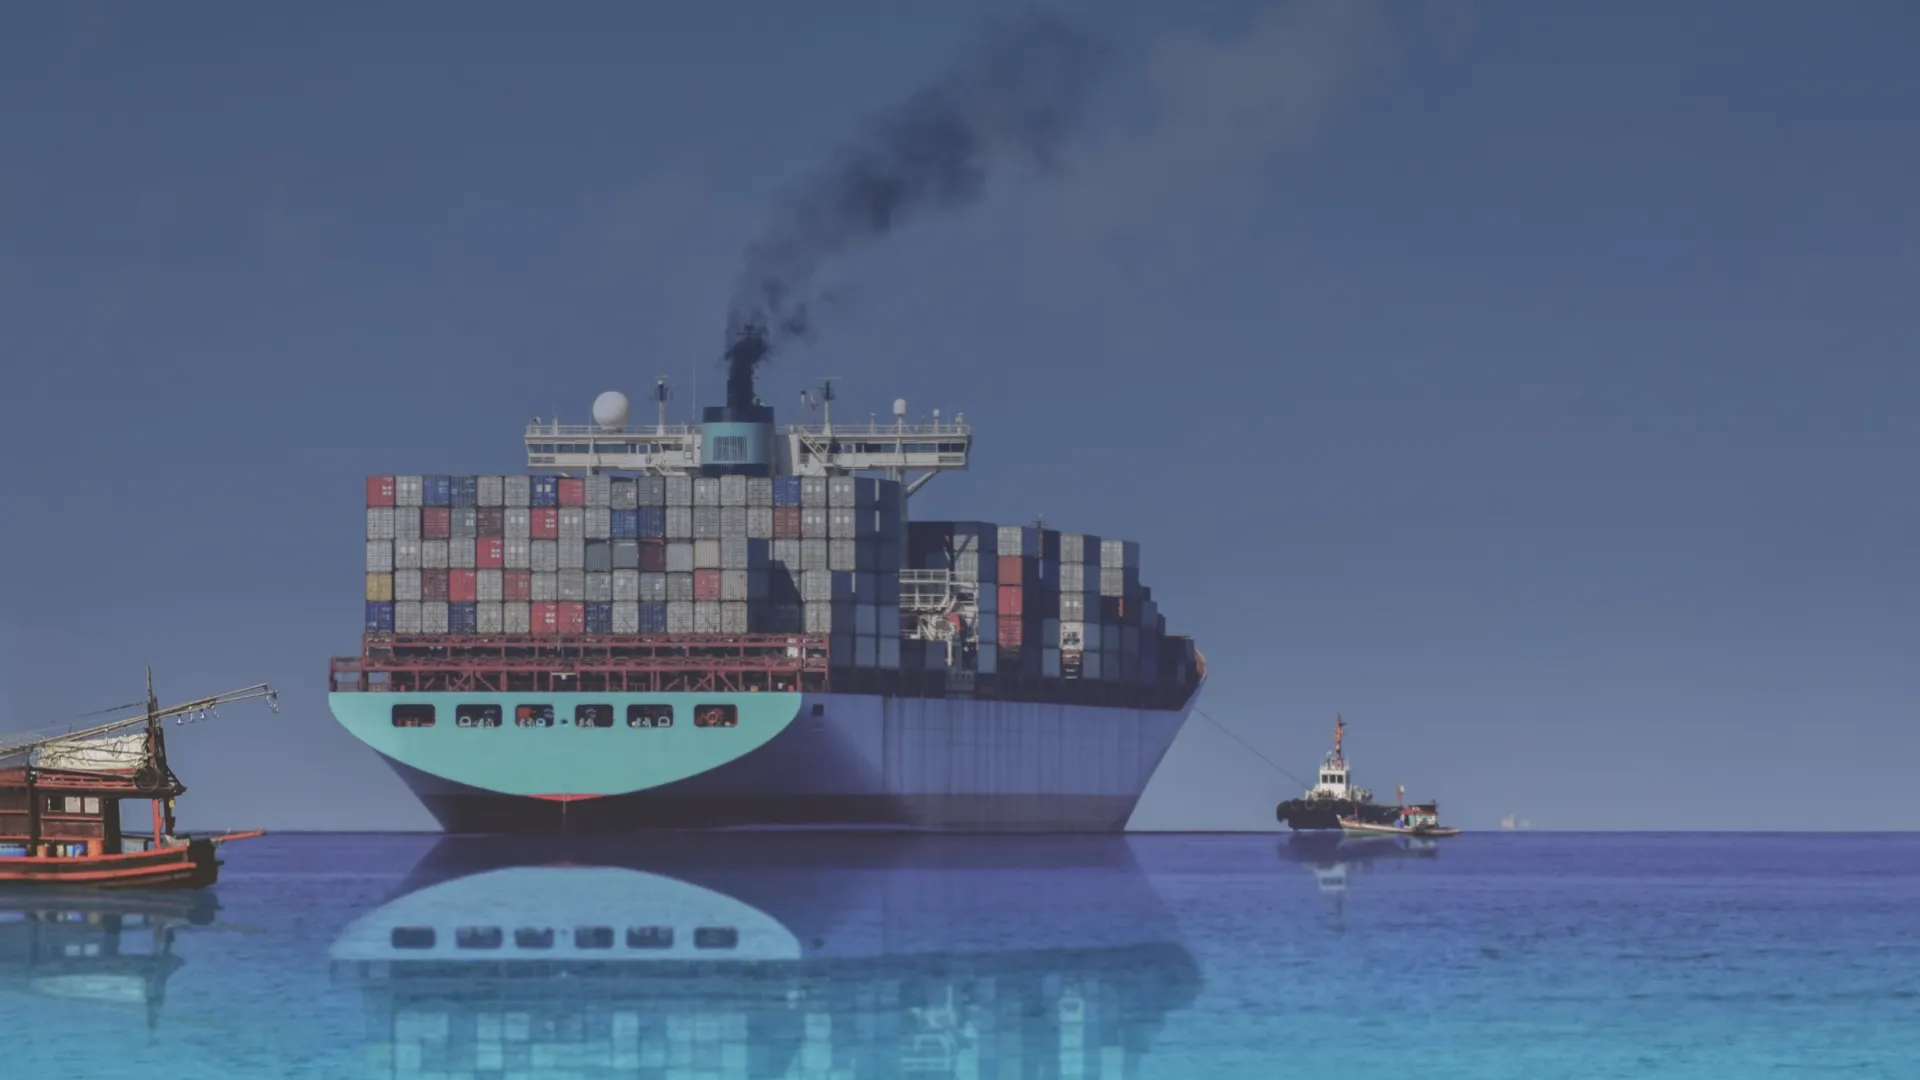 Het vervuilende schip op deze afbeelding symboliseert onze partners met wie we de maritieme sector willen verduurzamen.